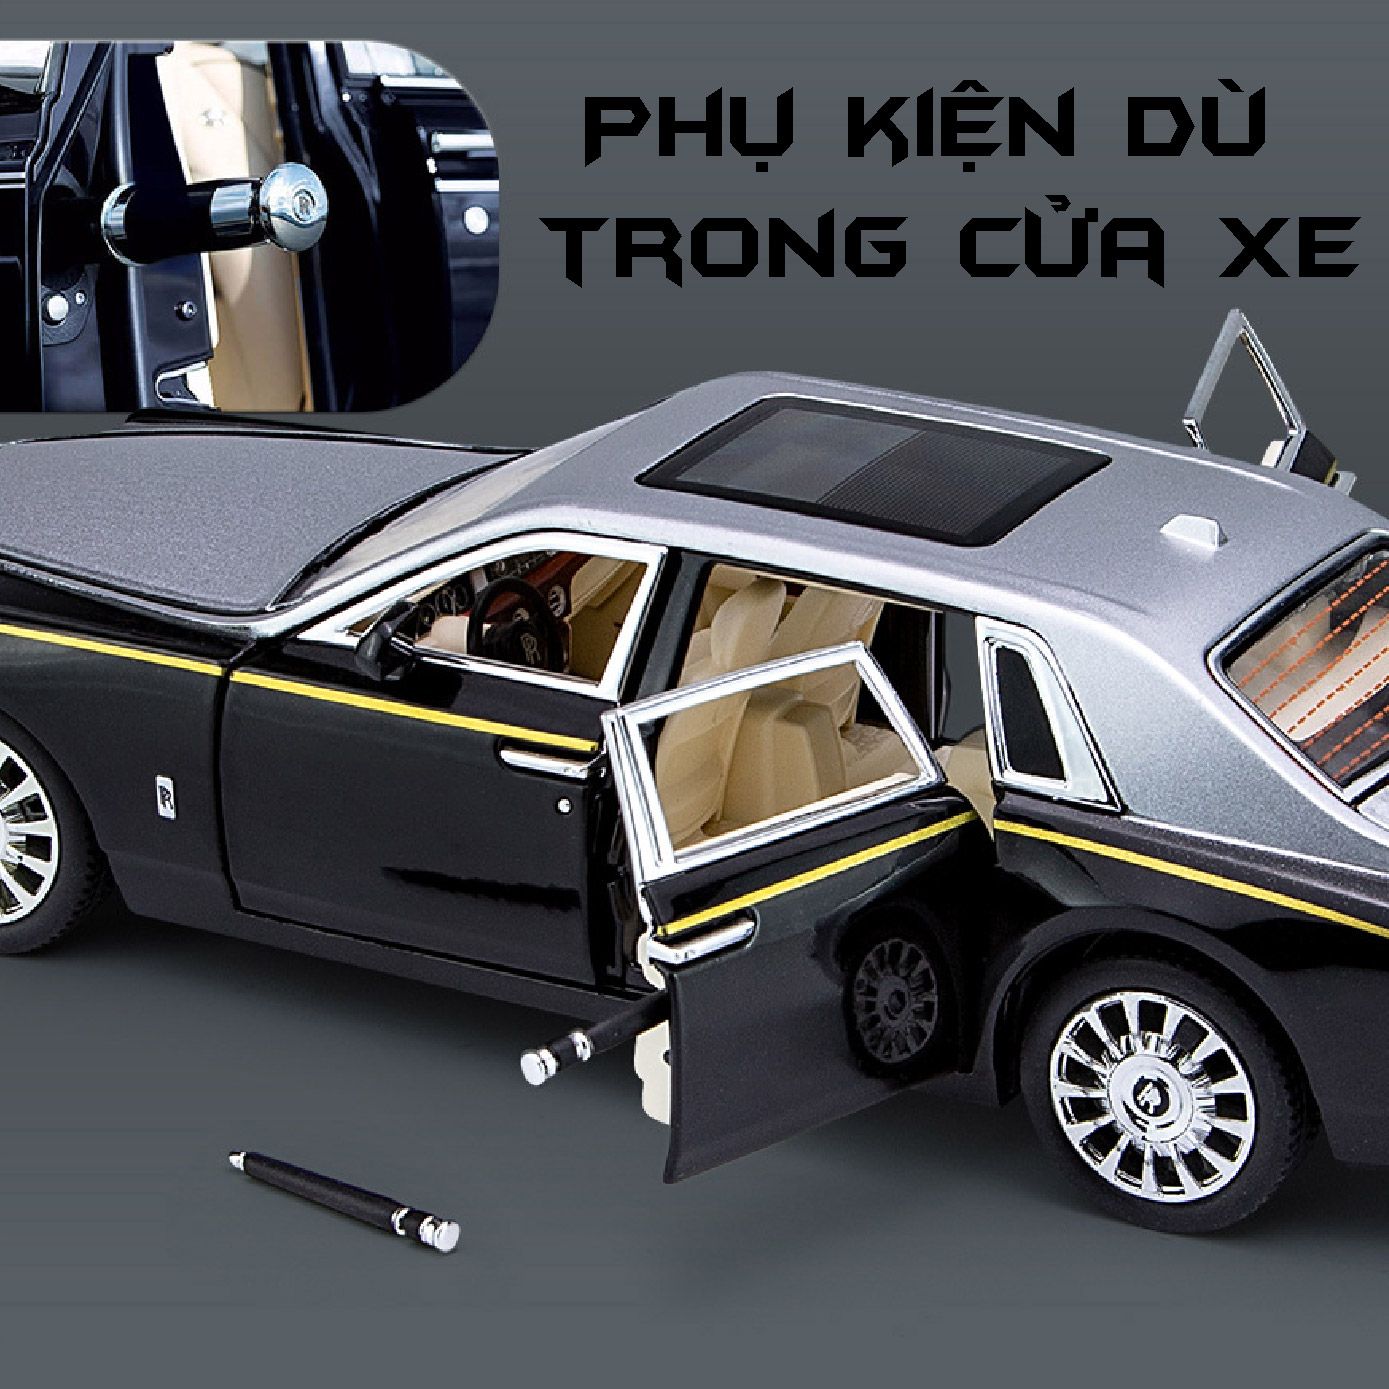  Mô hình xe Rolls Royce Phantom Trần Xe Bầu Trời Sao full open 1:24 Chezhi OT408 